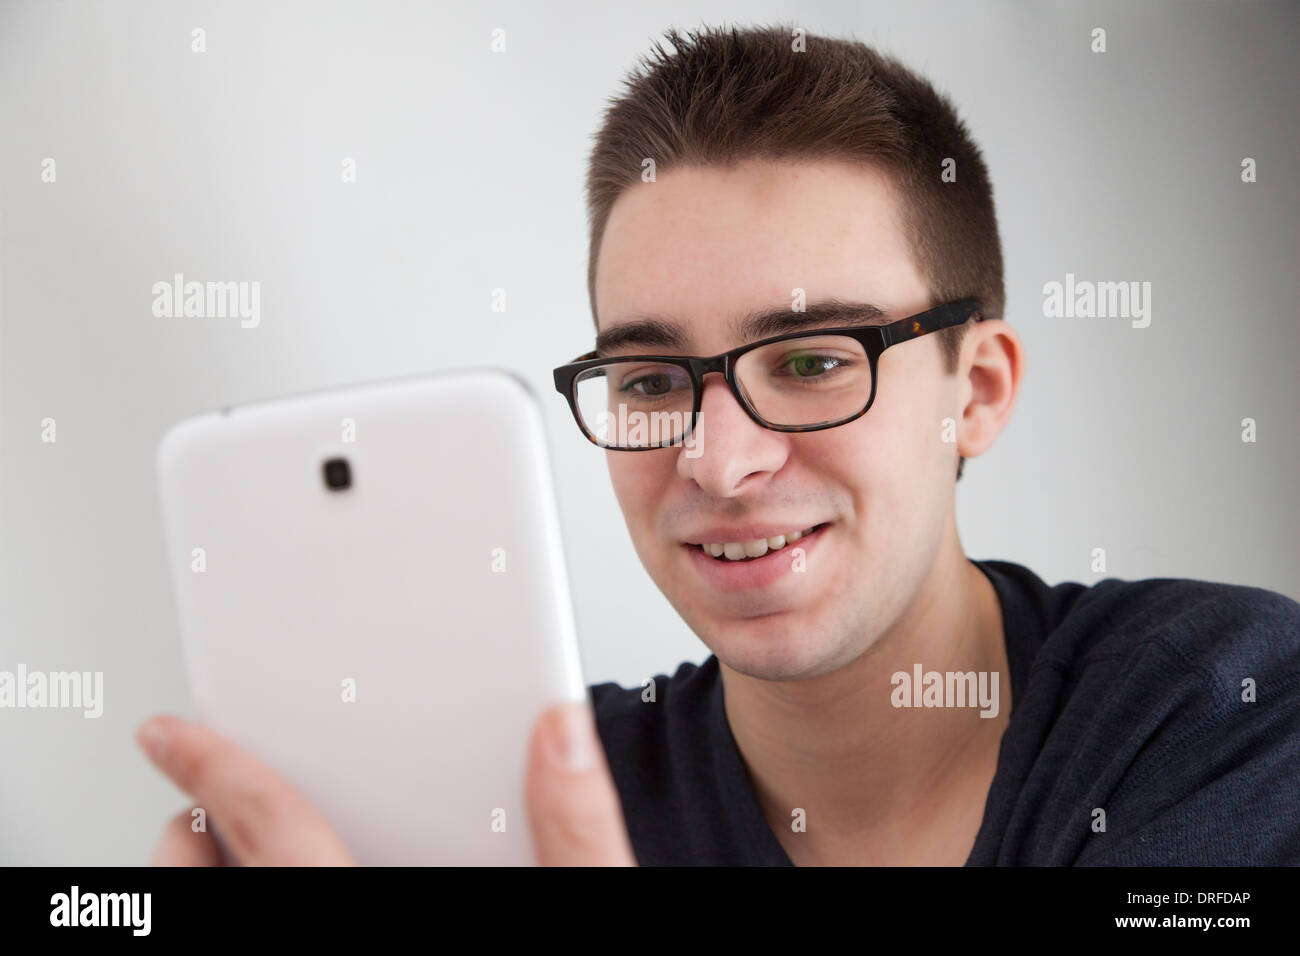 Buona ricerca giovane con gli occhiali, sorridenti mentre si tiene un bianco digitale compressa. Foto Stock